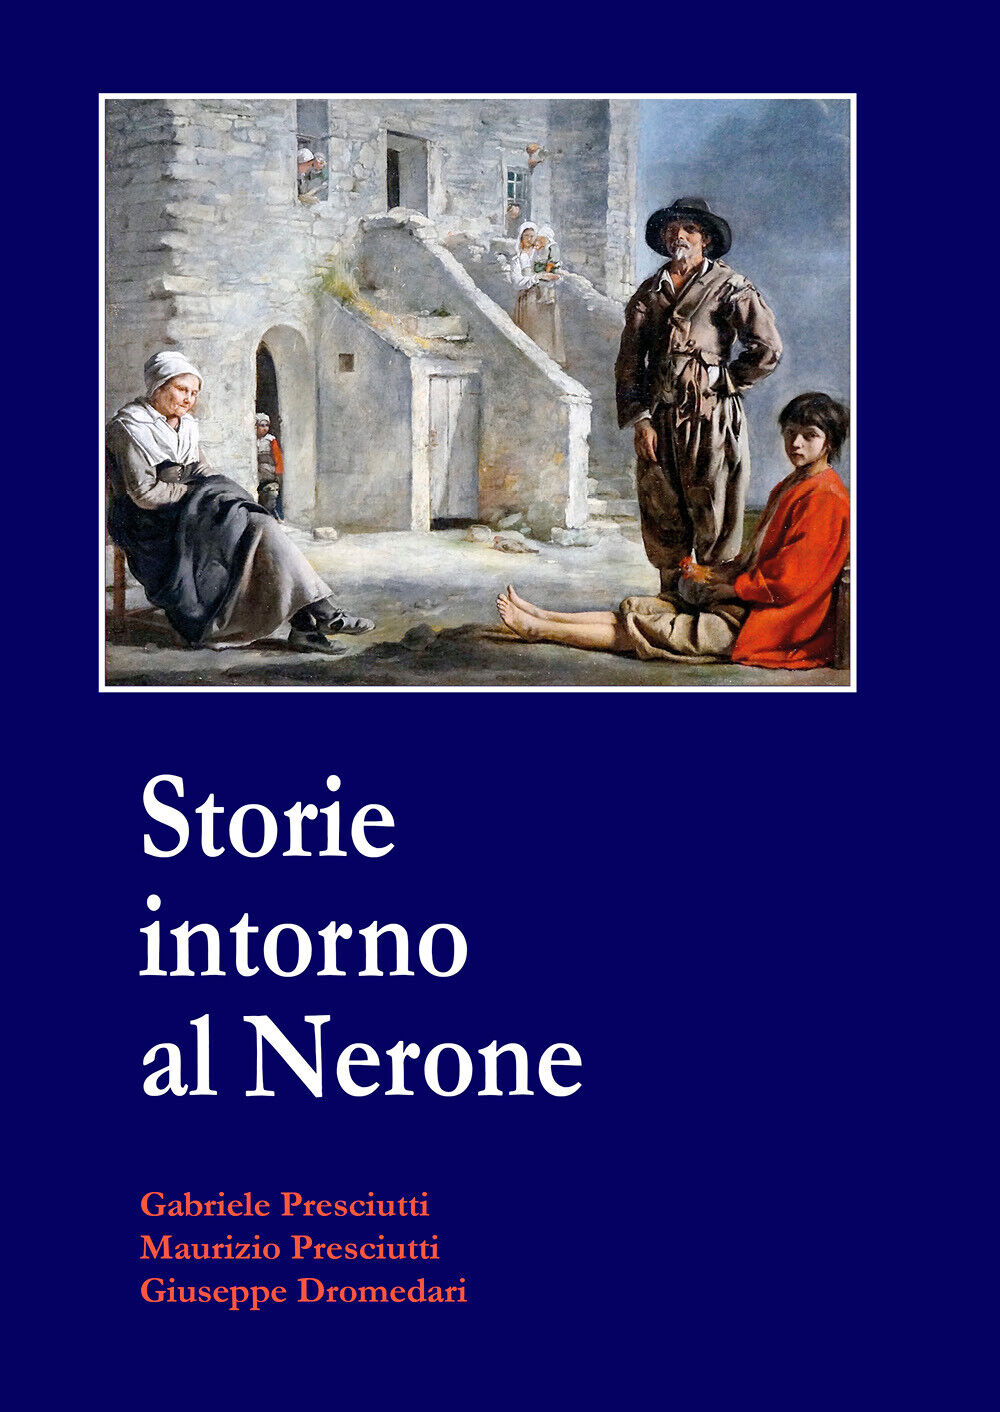 Storie intorno al Nerone di G. Presciutti, M. Presciutti, G. Dromedari, 2021, Yo libro usato